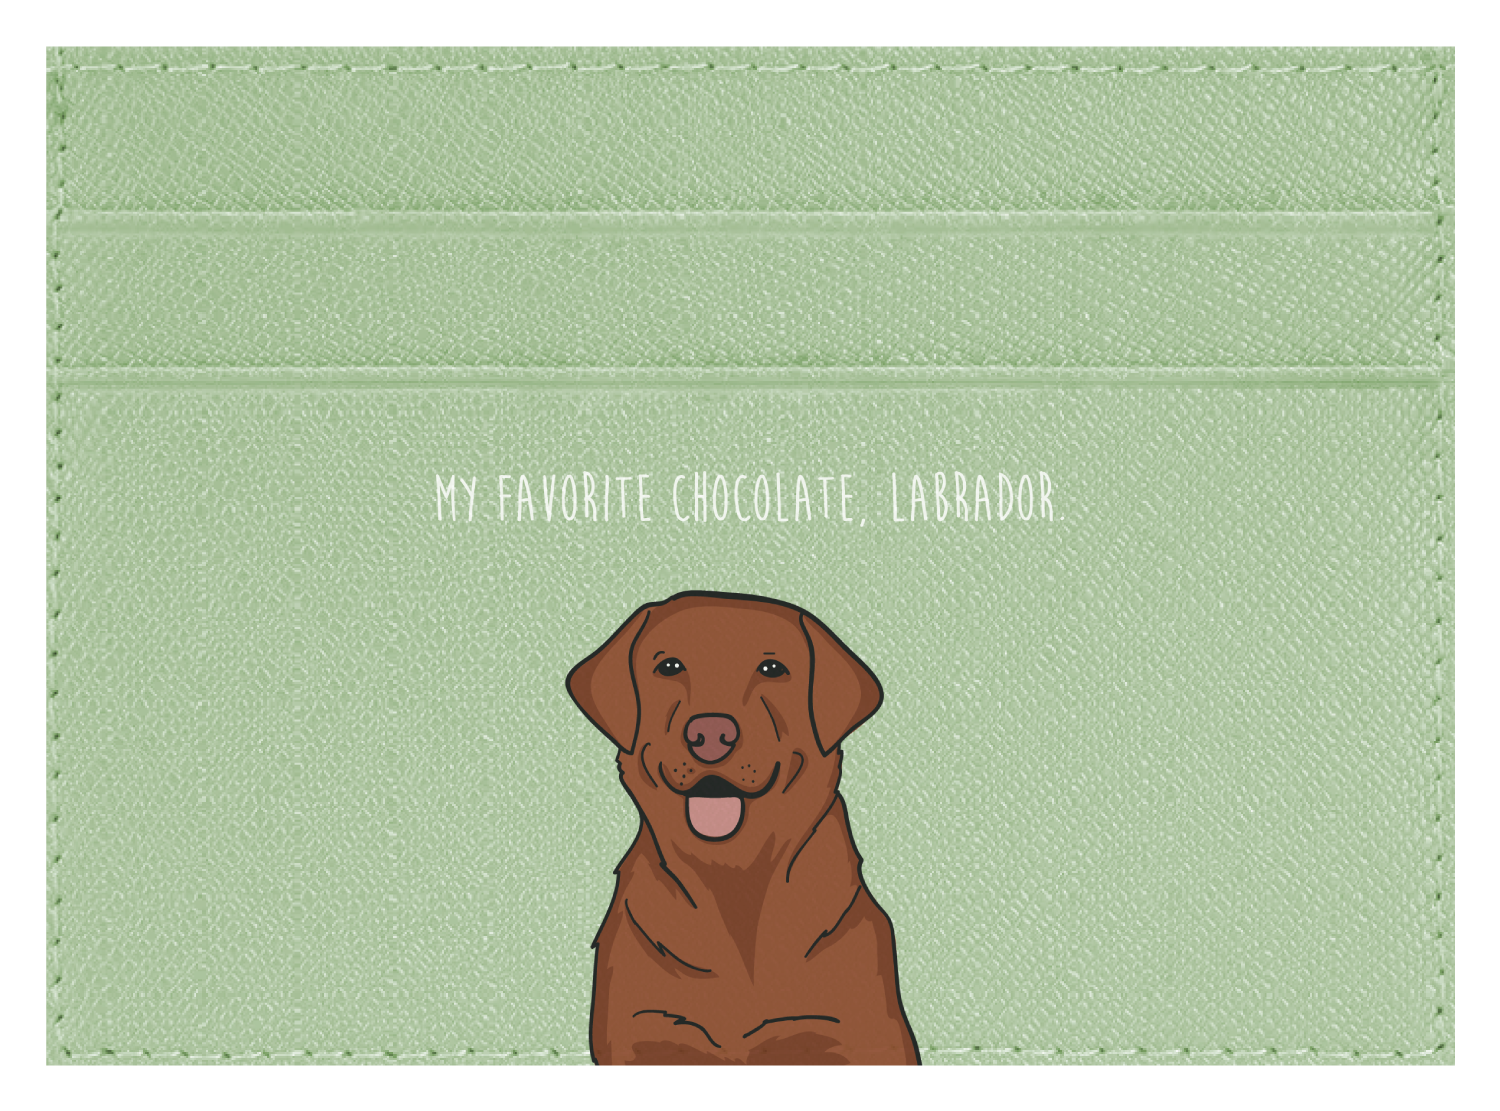 My Favorite Chocolate, Labrador